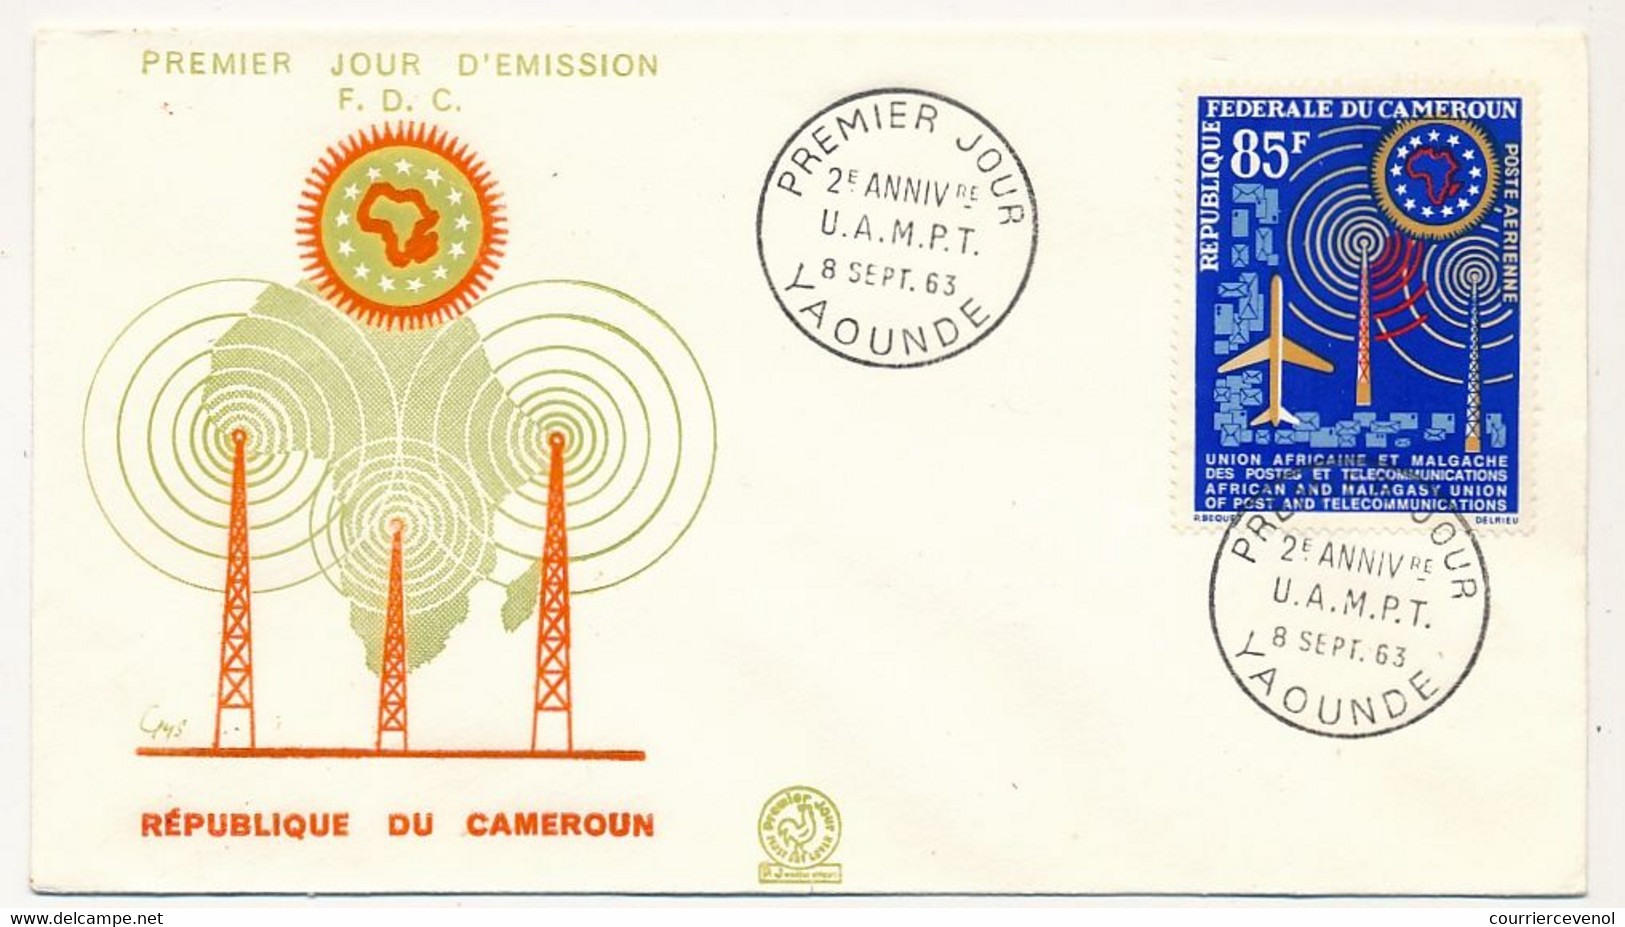 CAMEROUN => Enveloppe FDC - 85F 2eme Anniversaire UAMPT - 8 Sept 1983 - Yaoundé - Cameroon (1960-...)